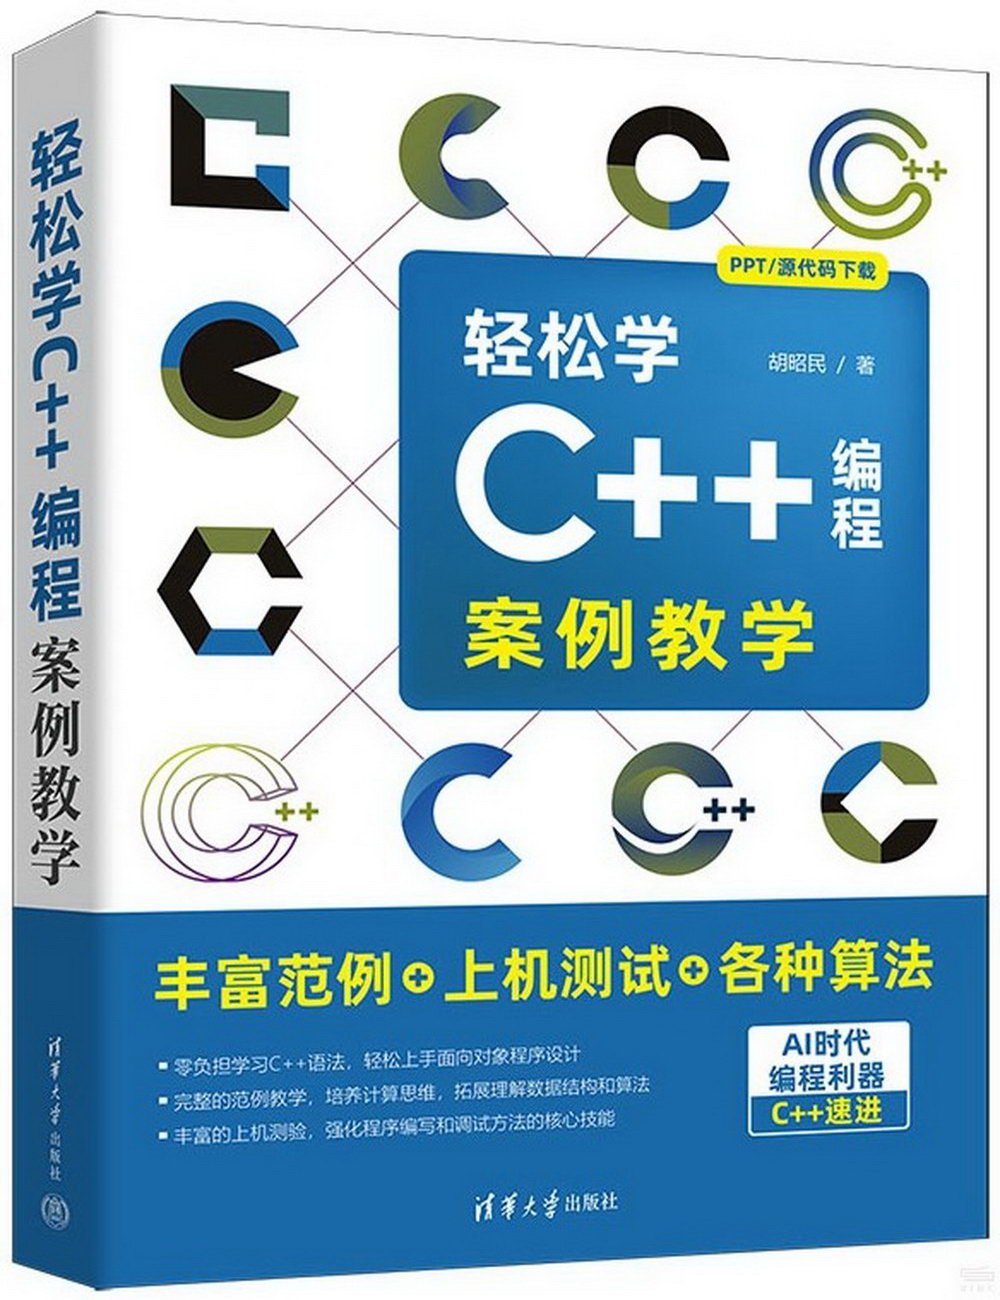 輕鬆學C++編程：案例教學